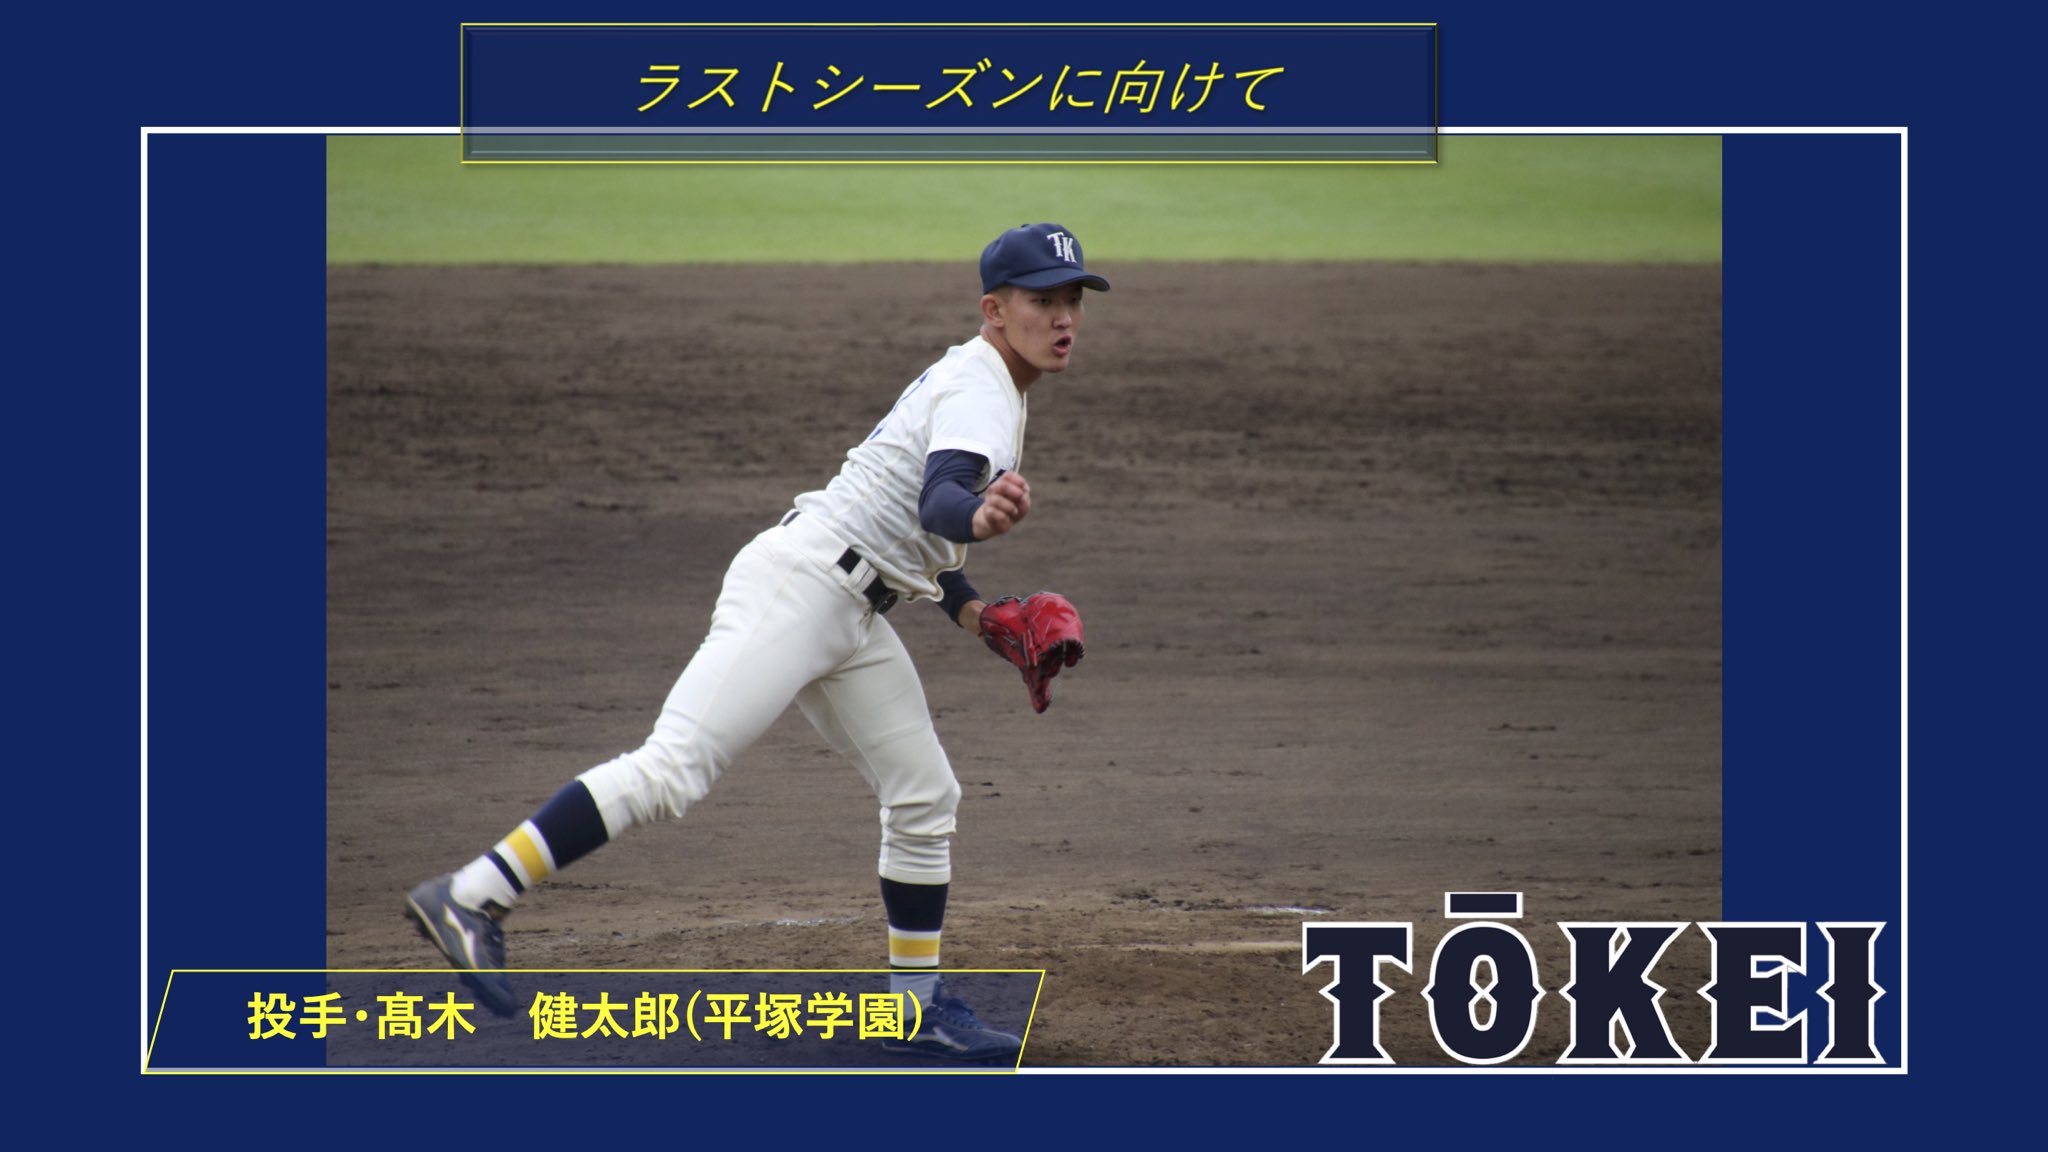 東京経済大学 硬式野球部【公式】 (@tkubbc_official) / Twitter